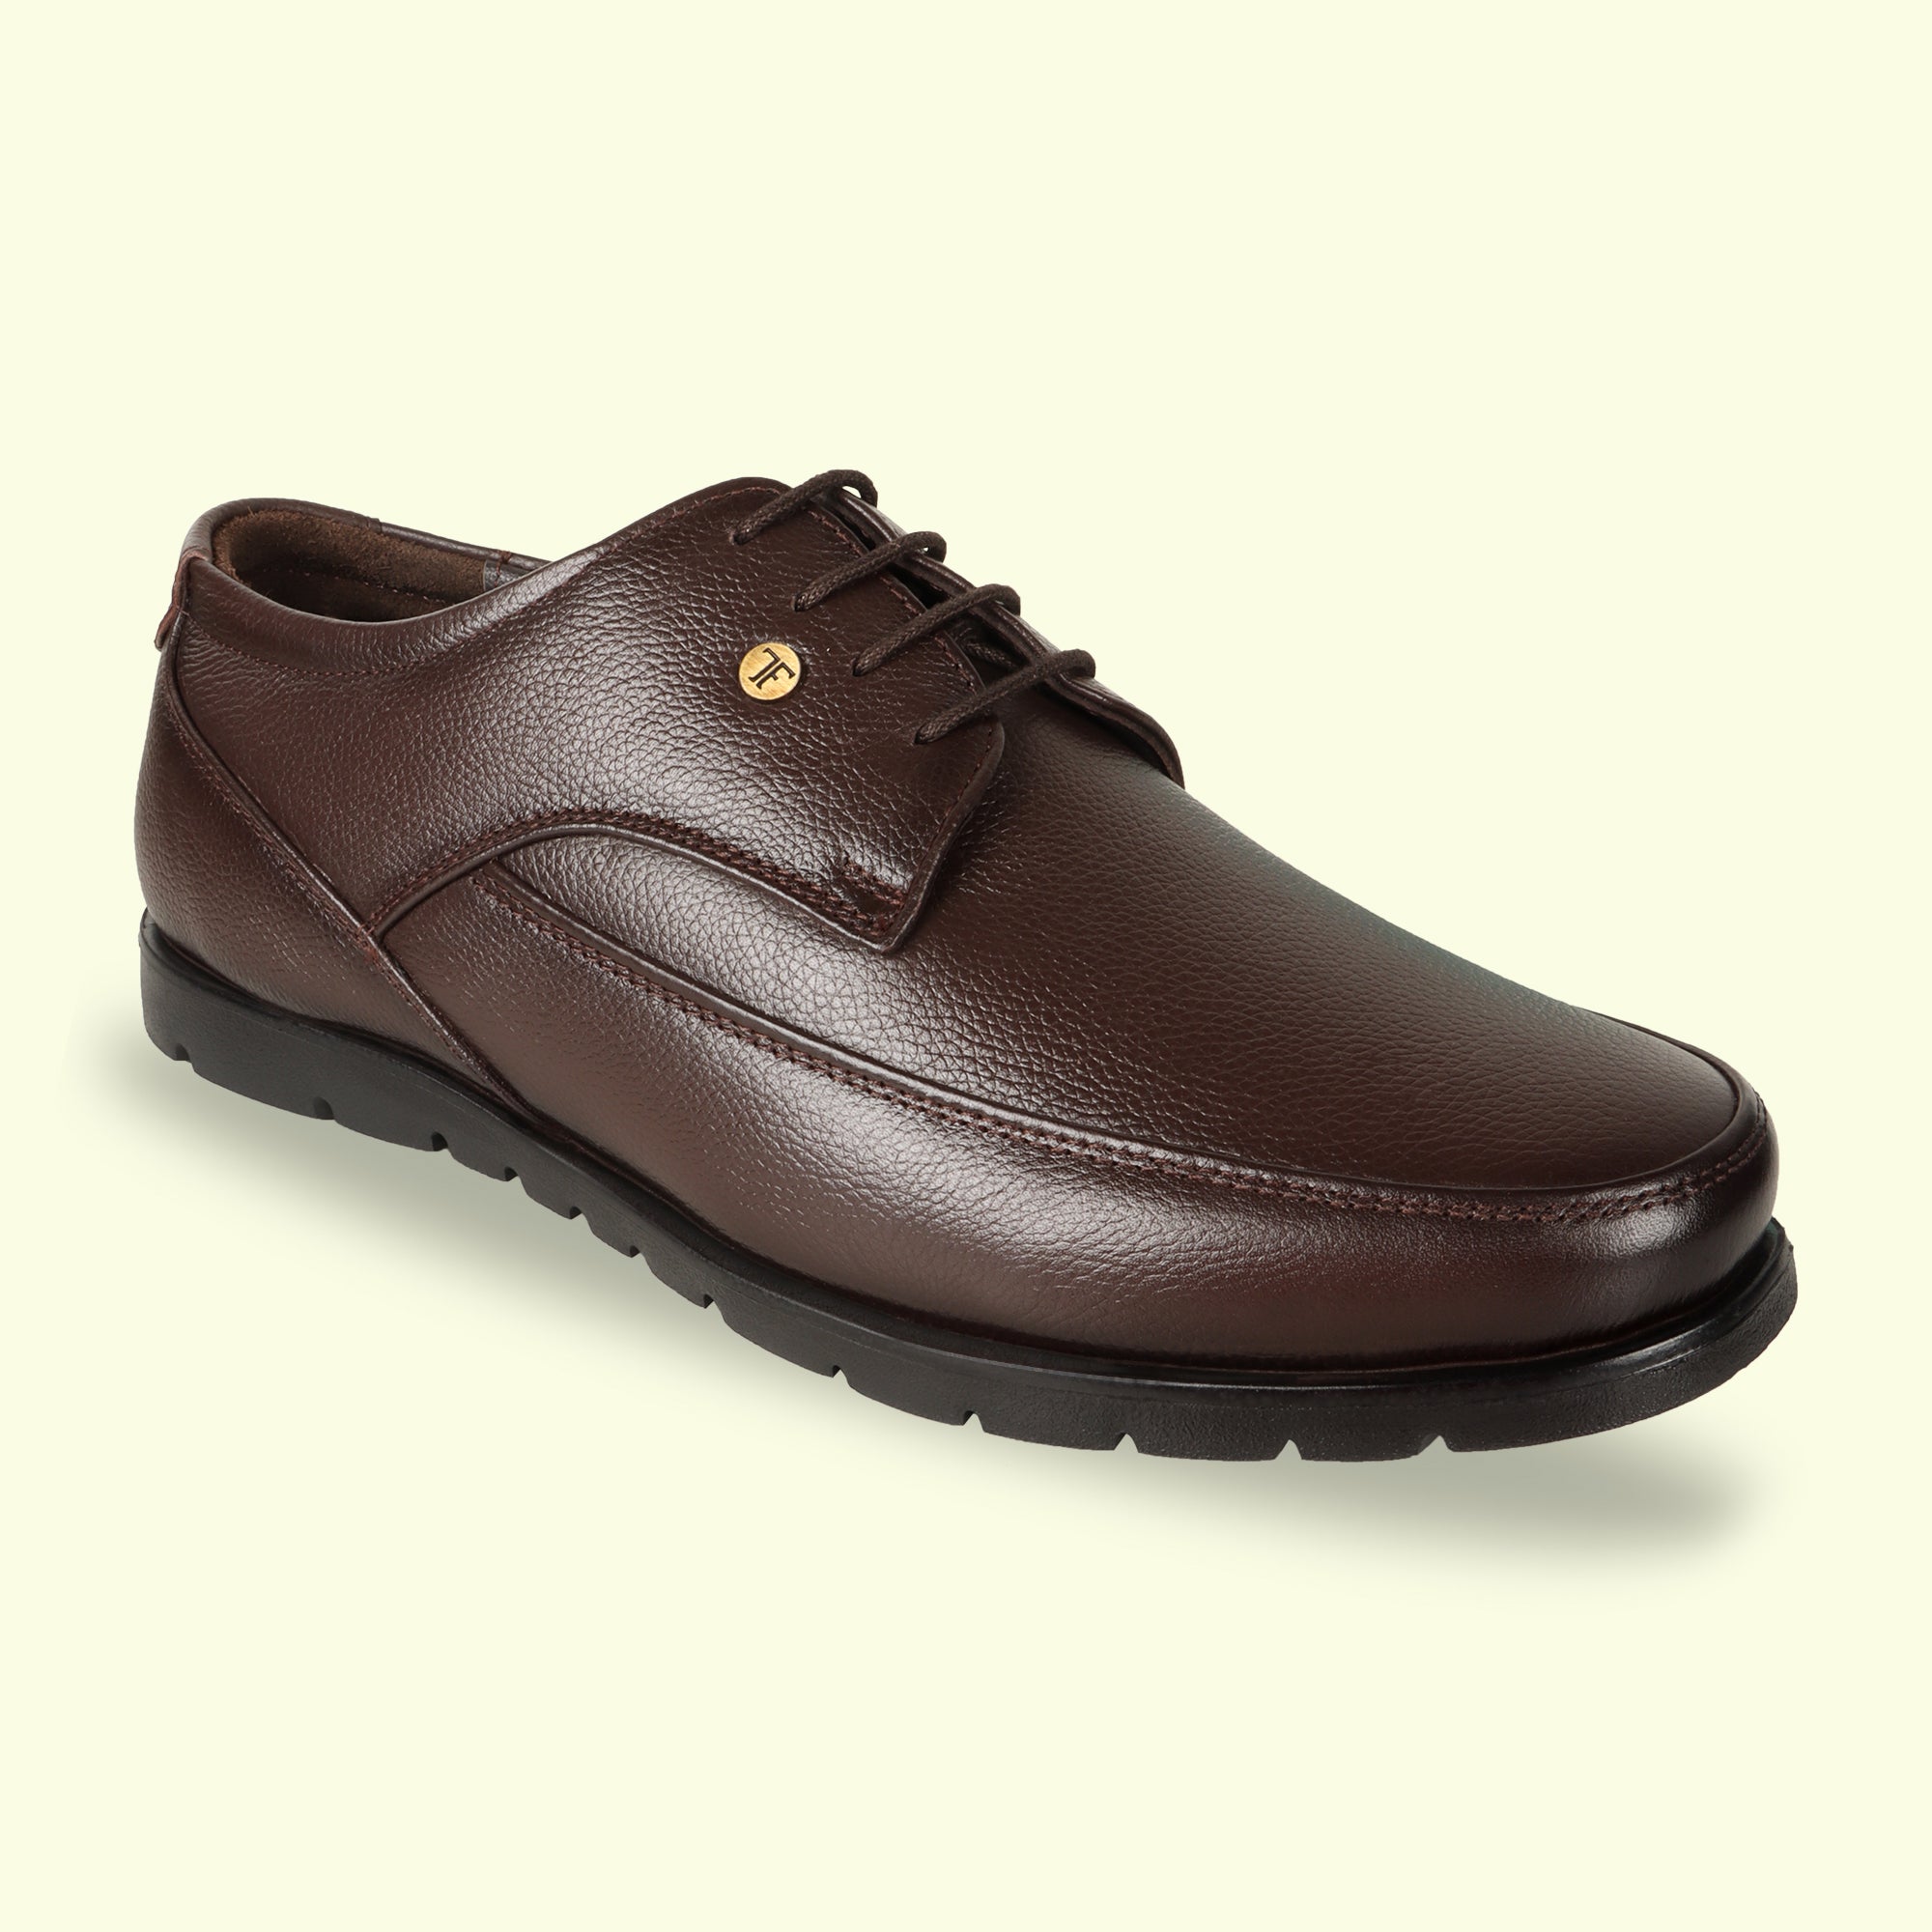 TRUDGE Brown Formal Shoe For Men - 5027